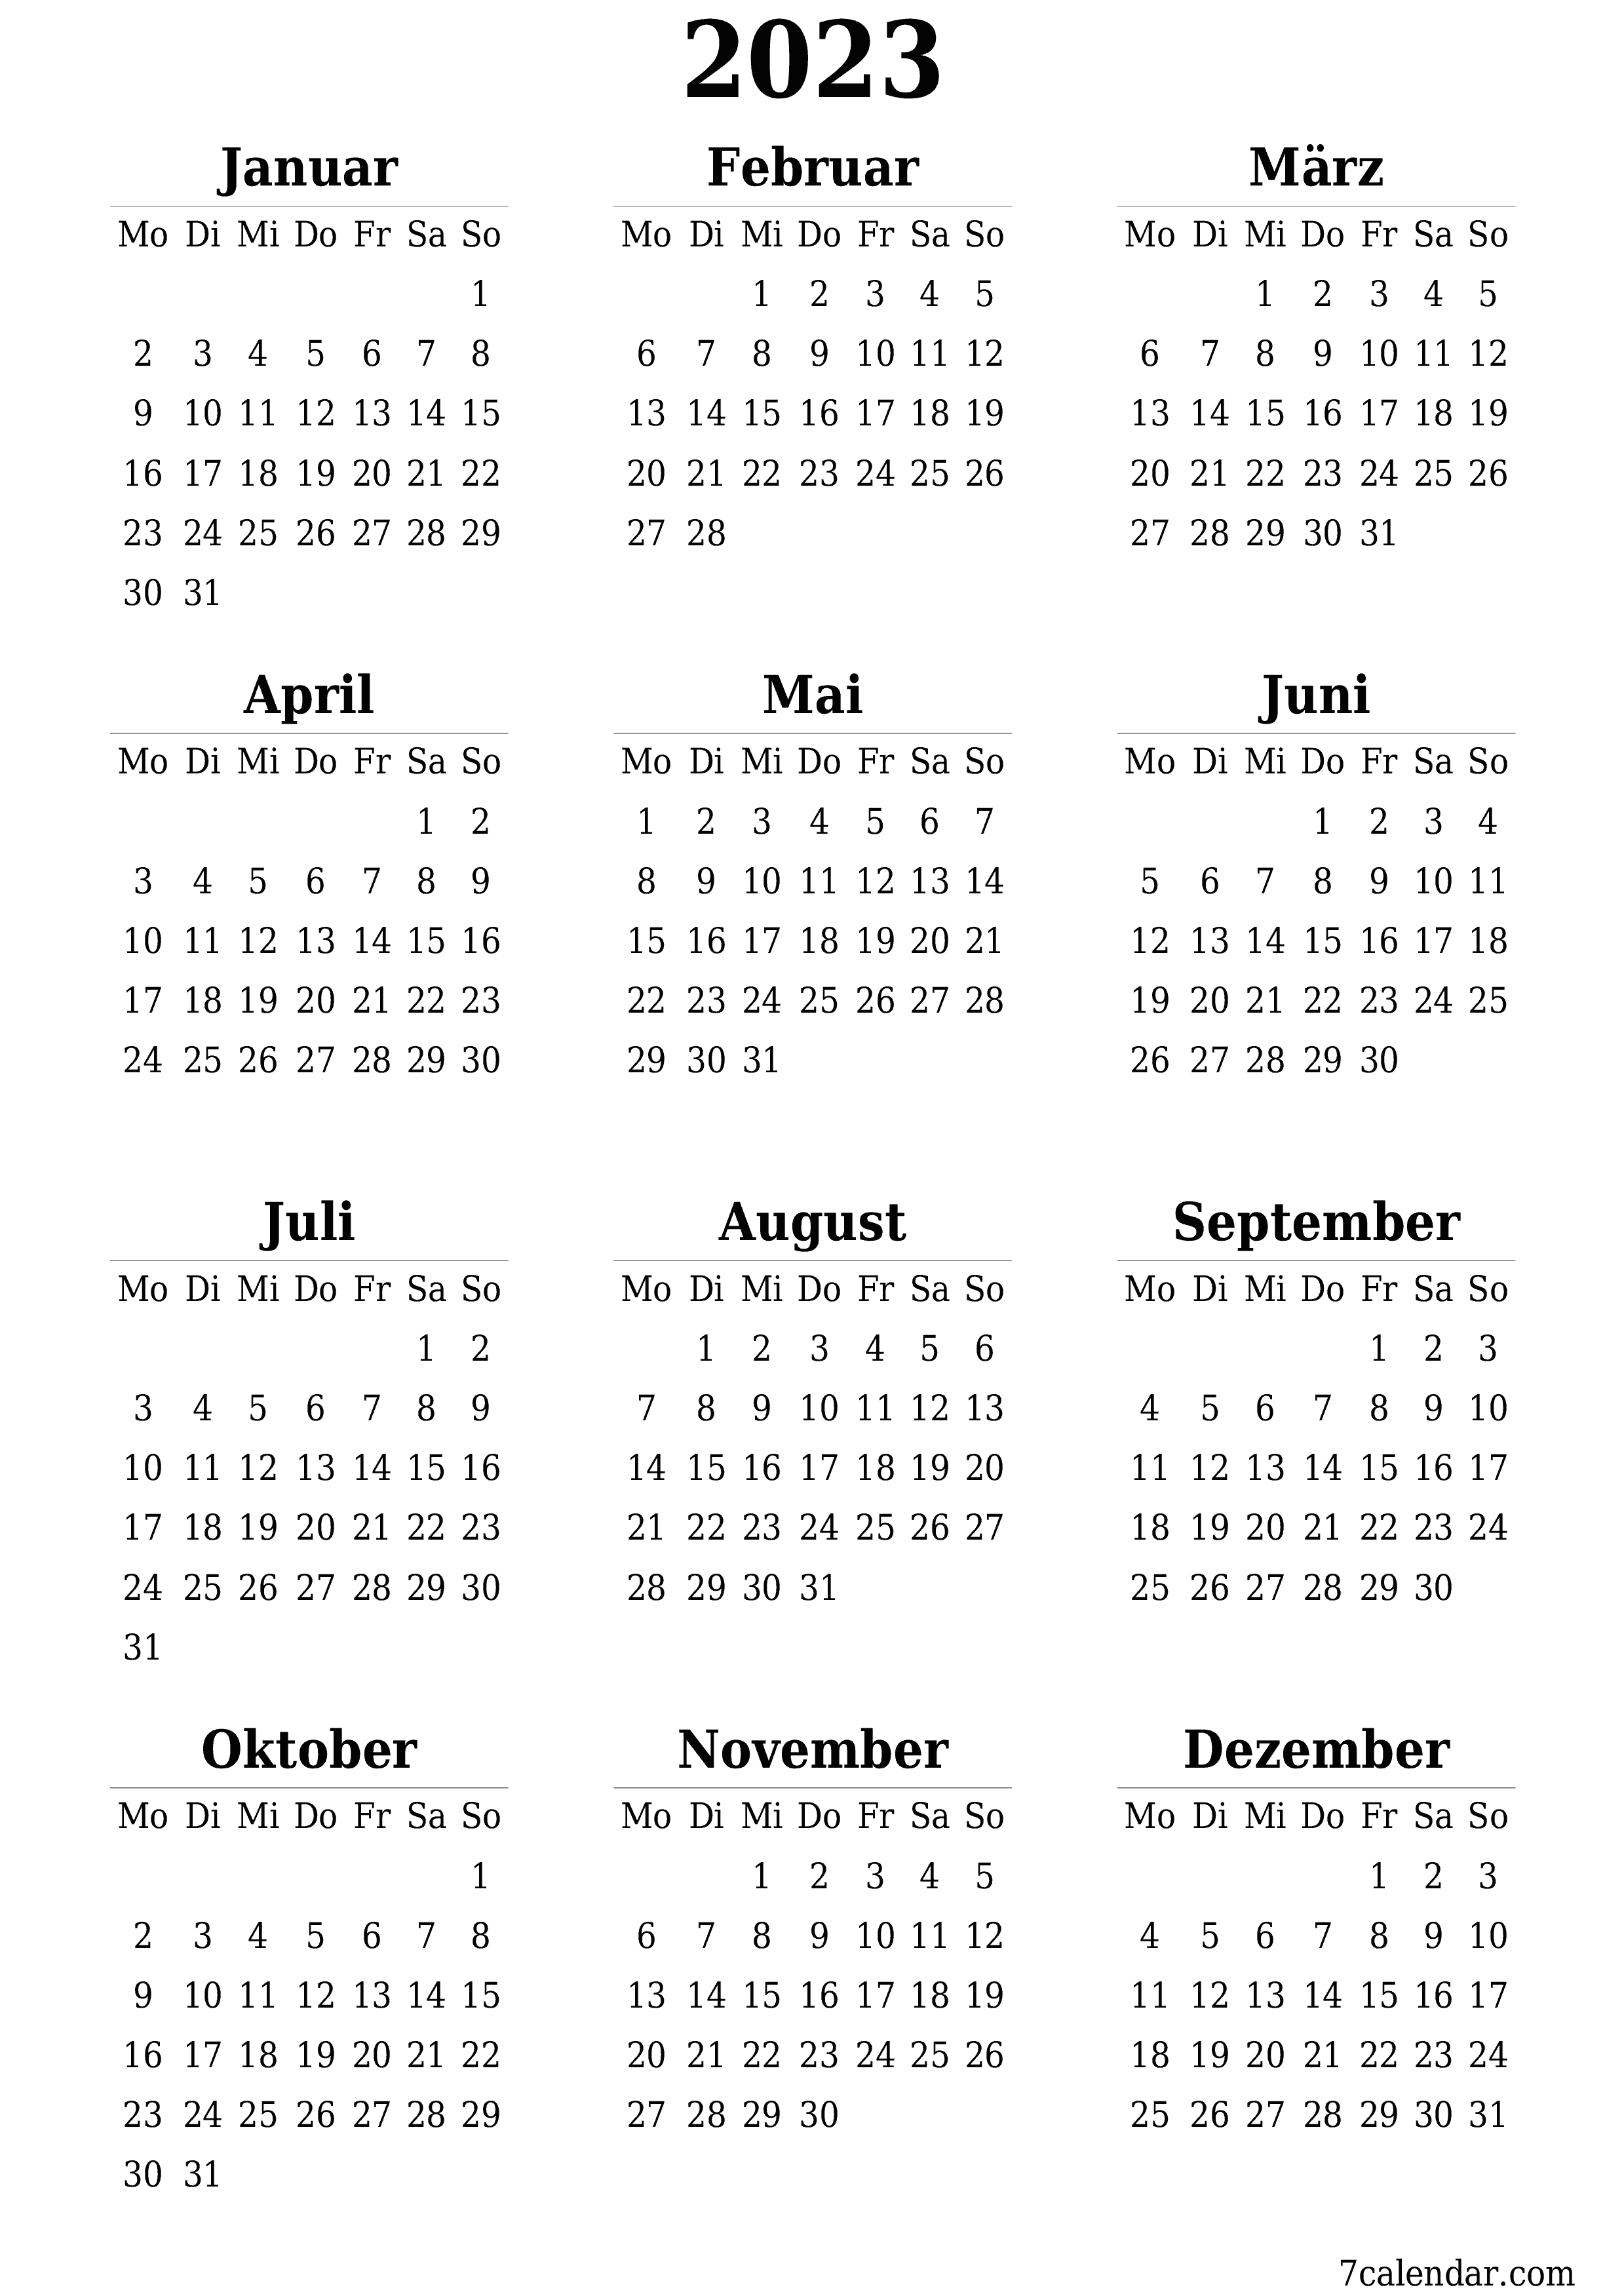  zum Ausdrucken Wandkalender vorlage kostenloser vertikal Jahreskalender Kalender März (Mär) 2023